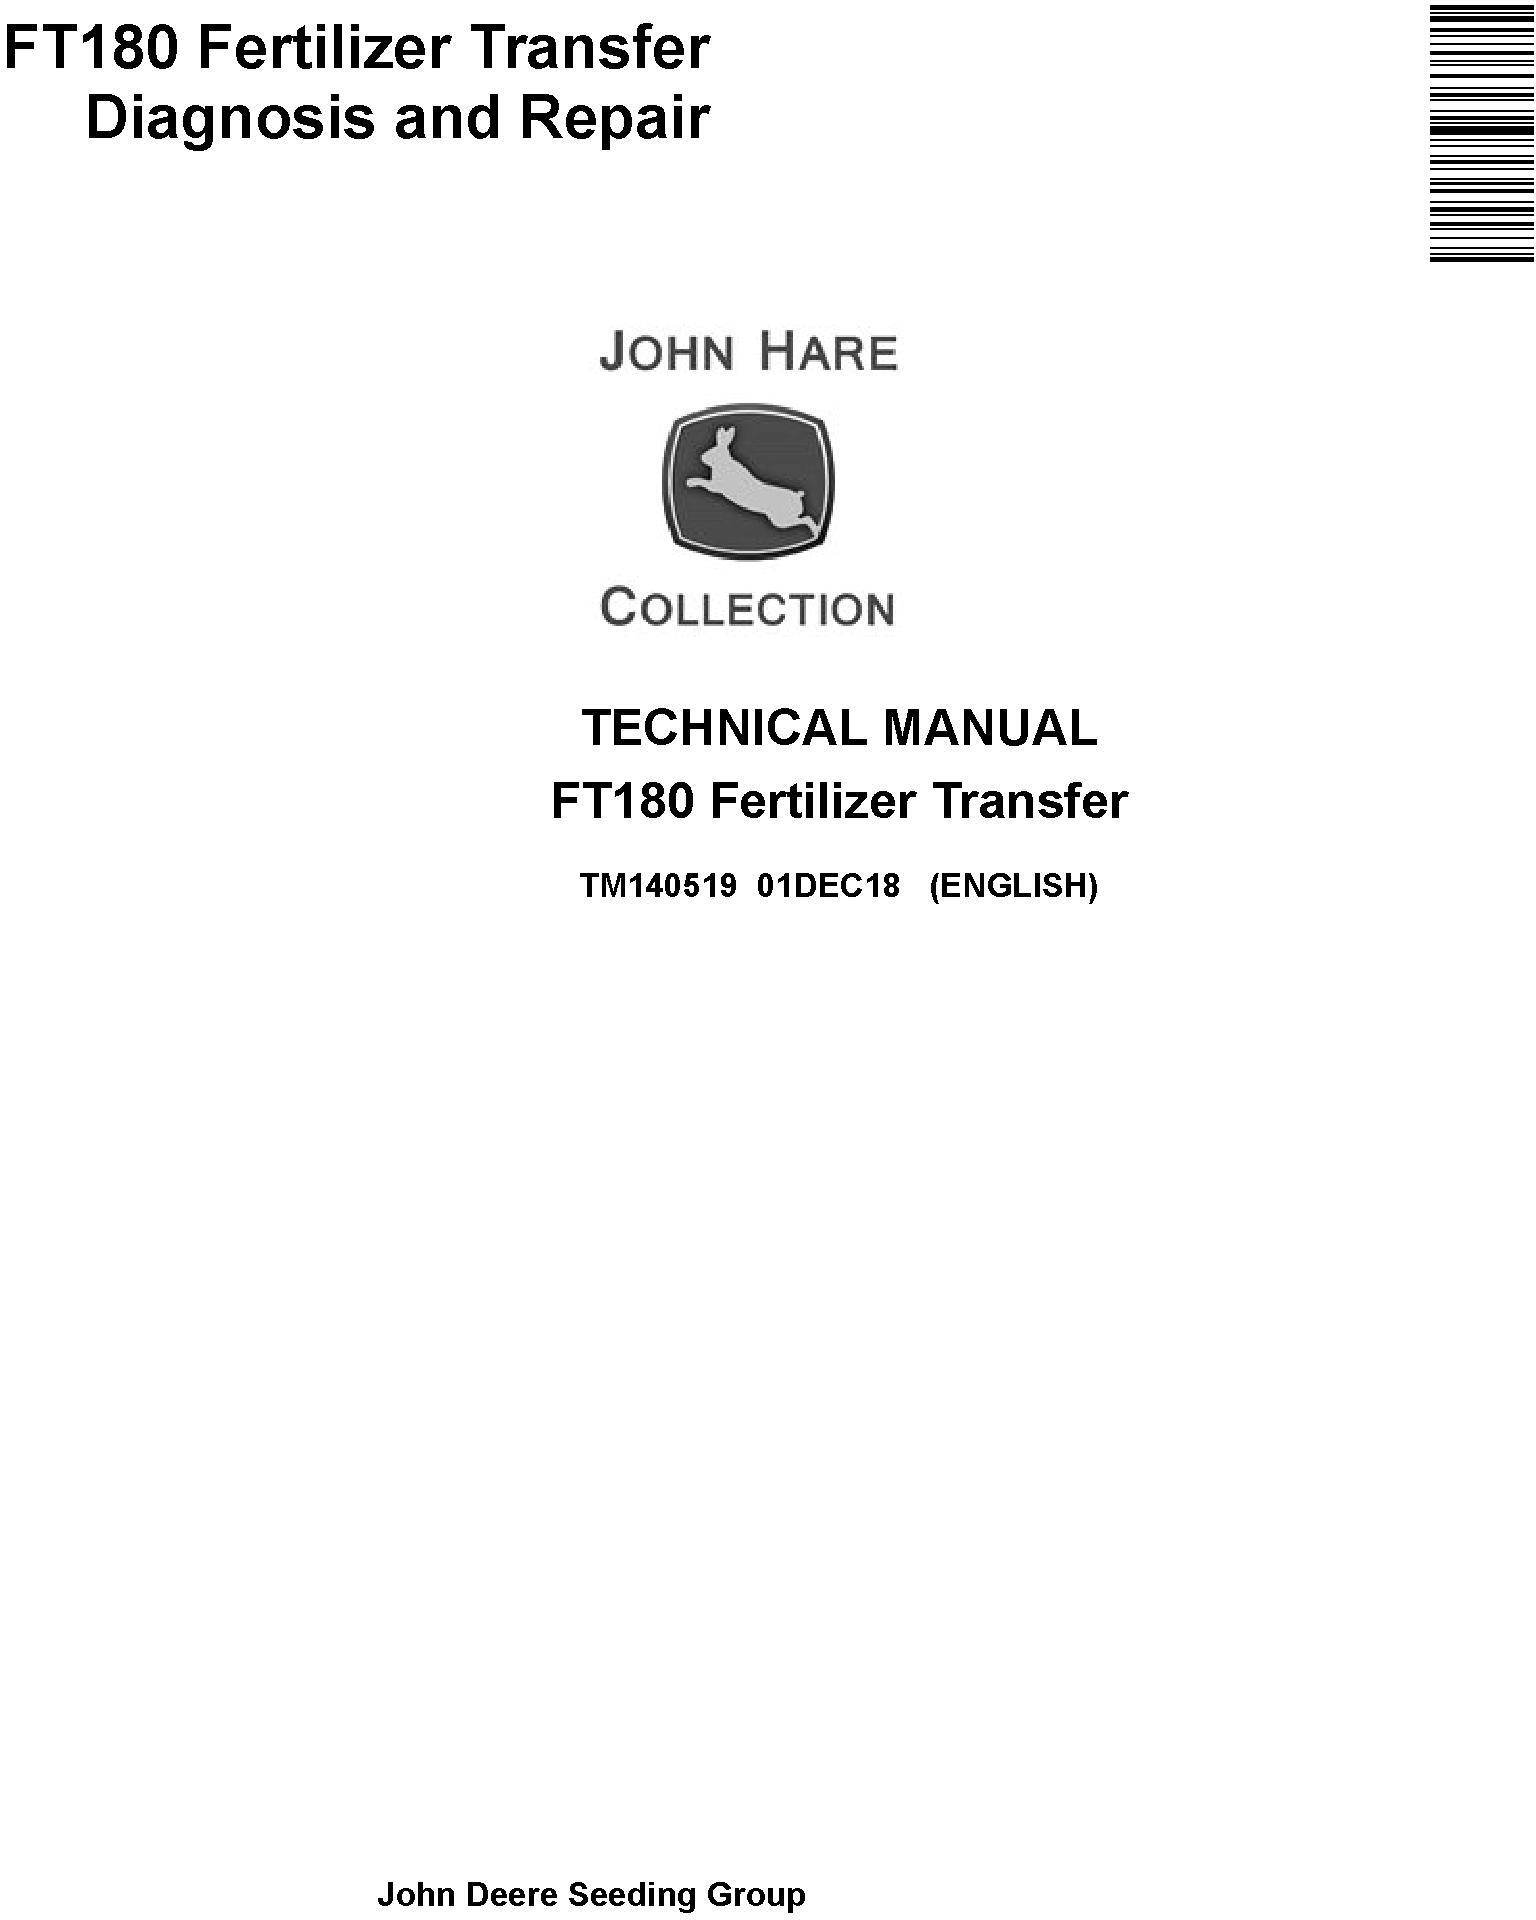 John Deere FT180 Fertilizer Transfer Diagnosis Repair Manual TM140519